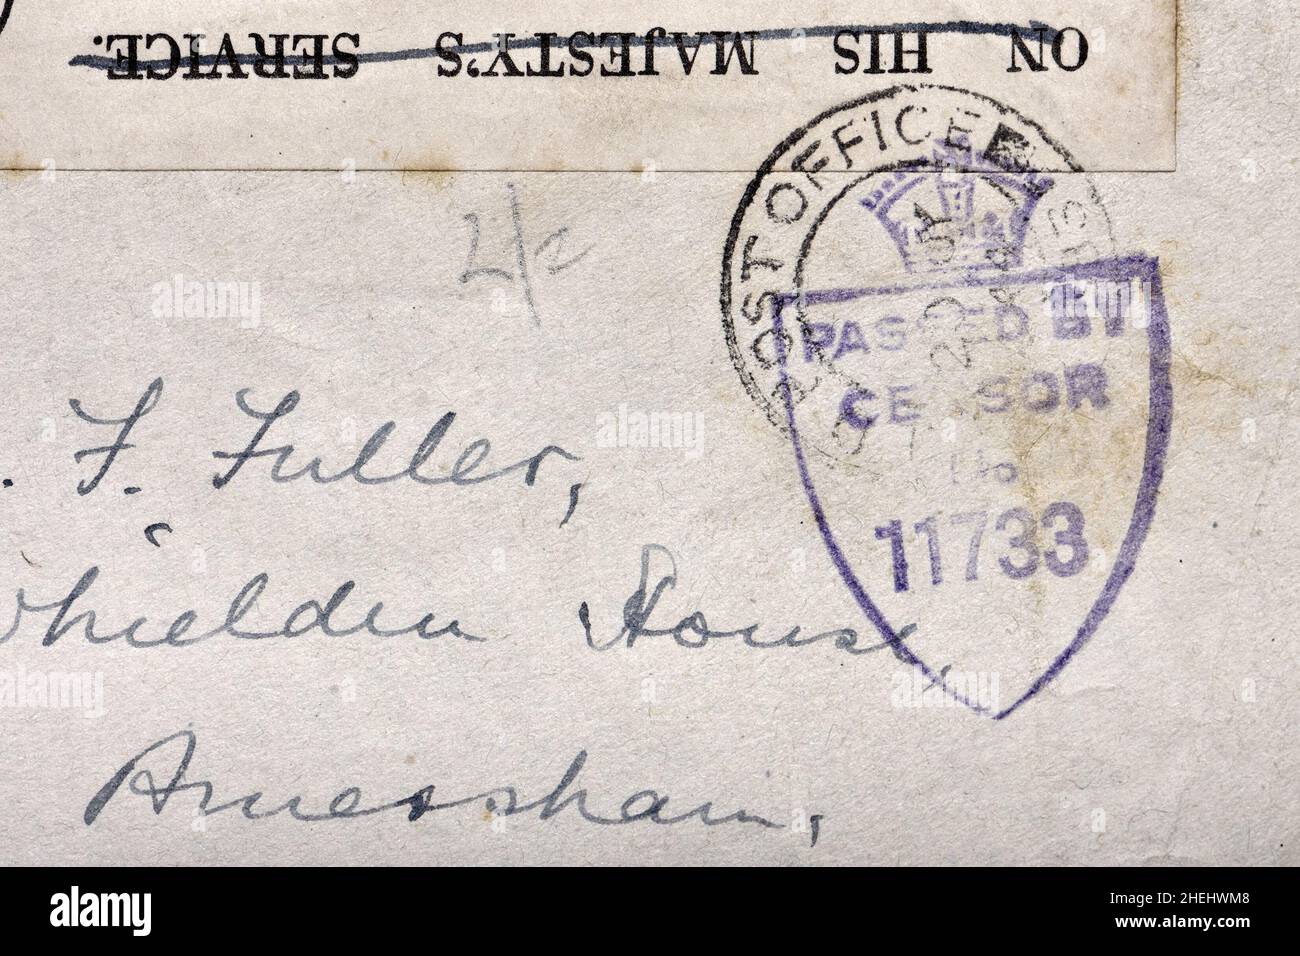 Carta publicada durante la Primera Guerra Mundial con un sello para mostrar que fue aprobado por los censores. Foto de stock